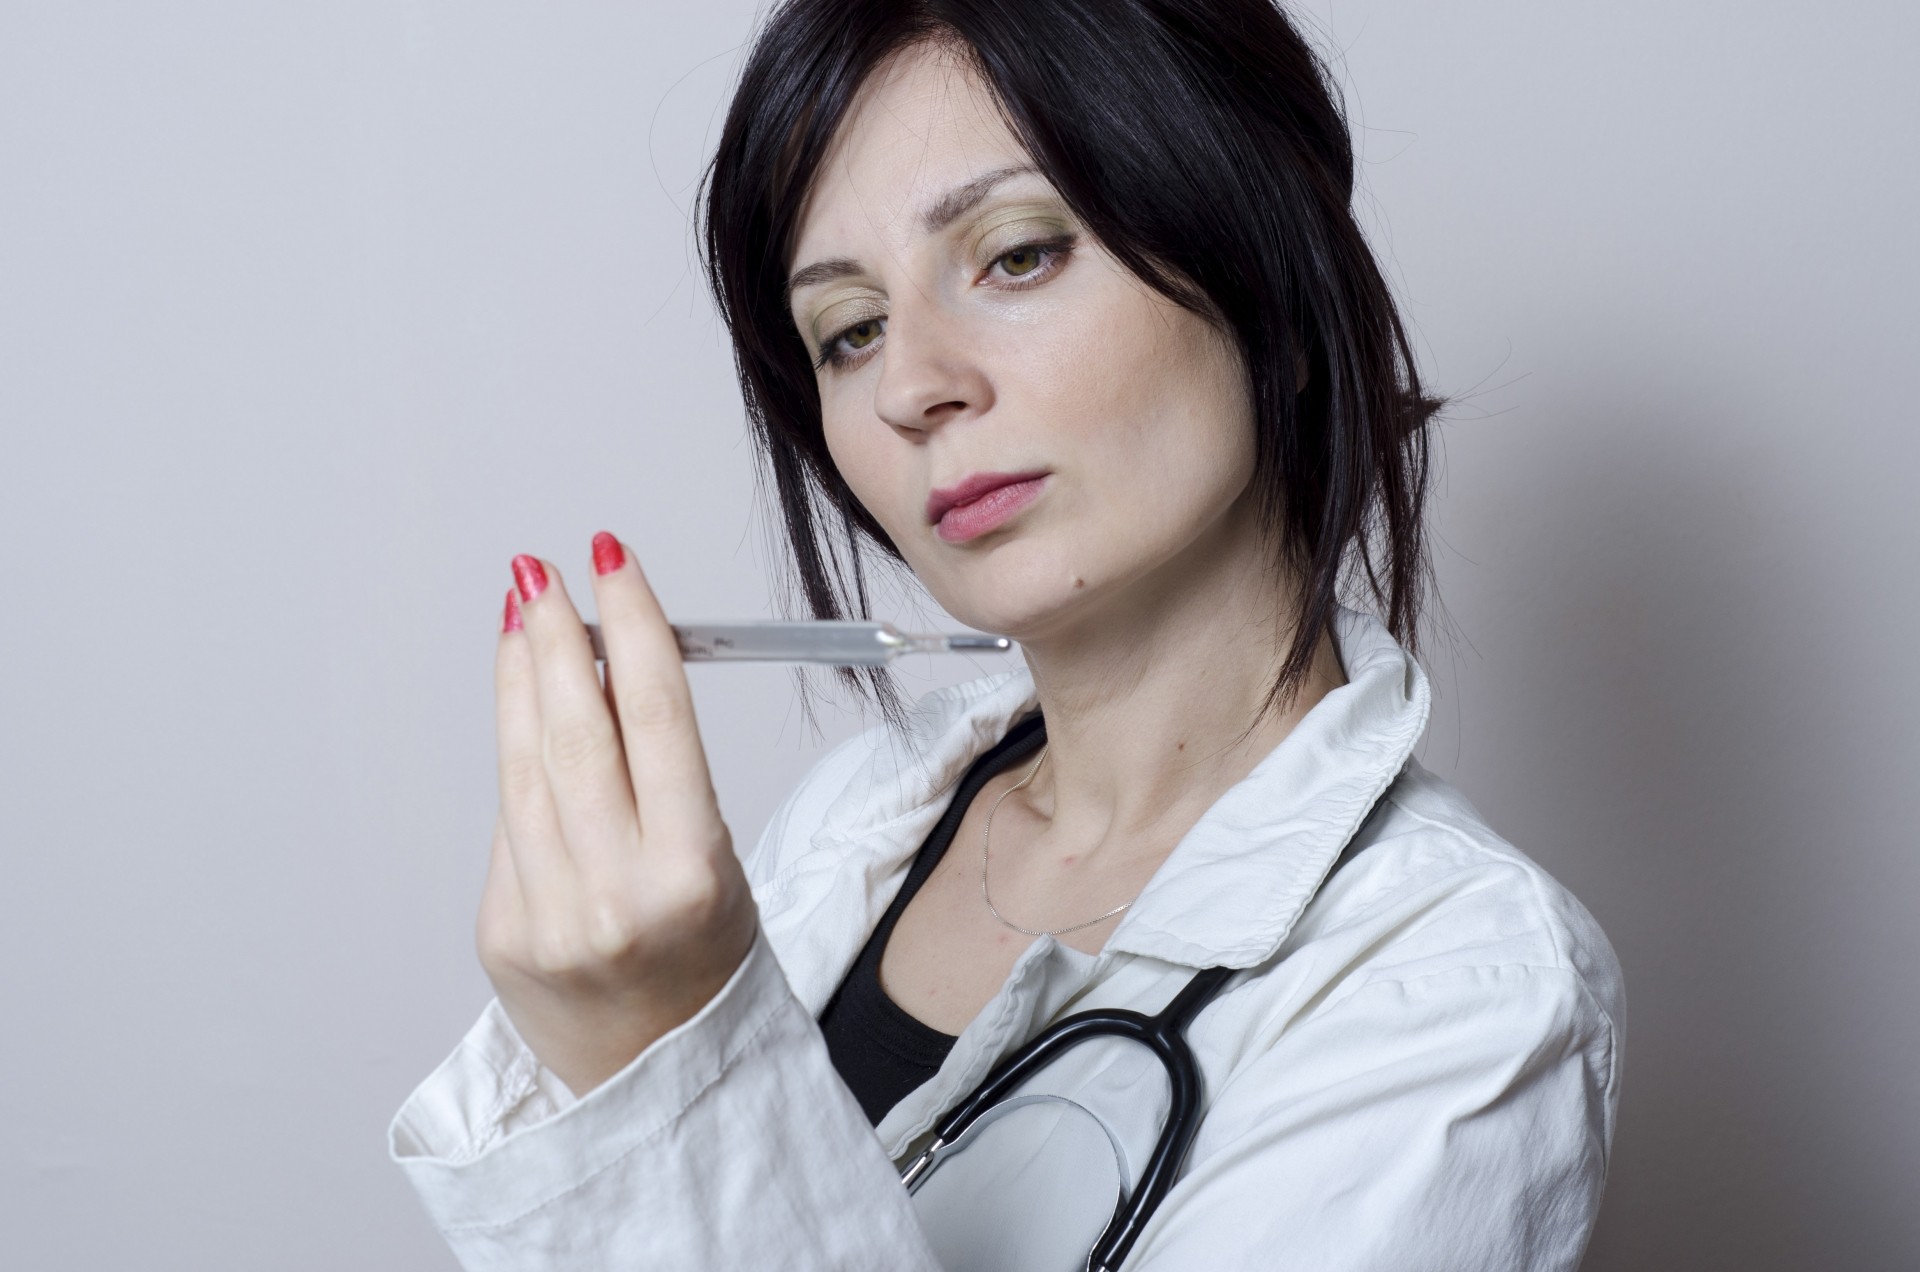 女性医師の働き方と悩みについて考える